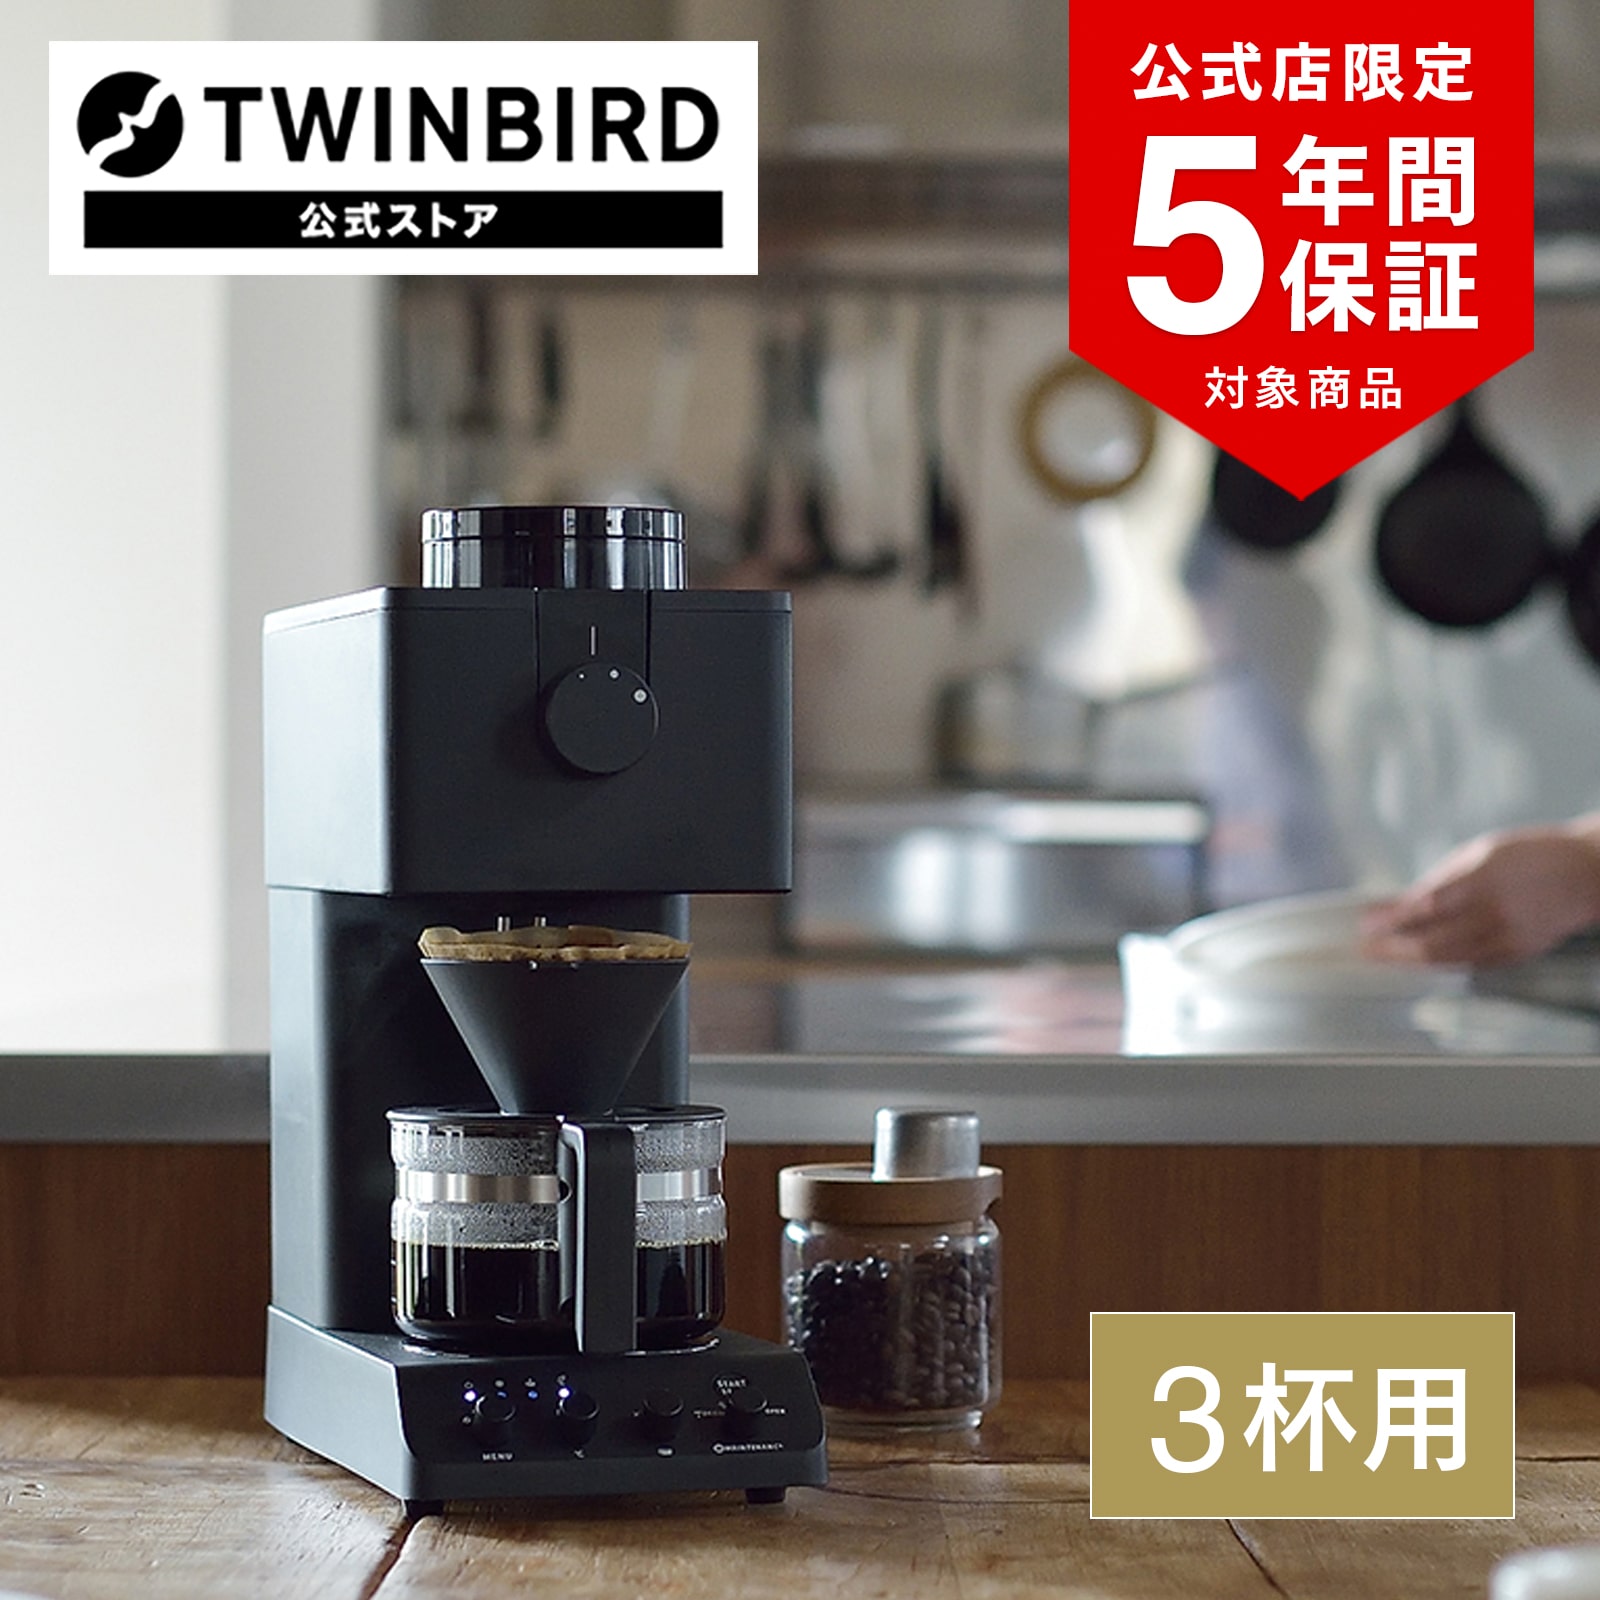 公式店限定5年保証】CM-D457B全自動コーヒーメーカー|コーヒーメーカー